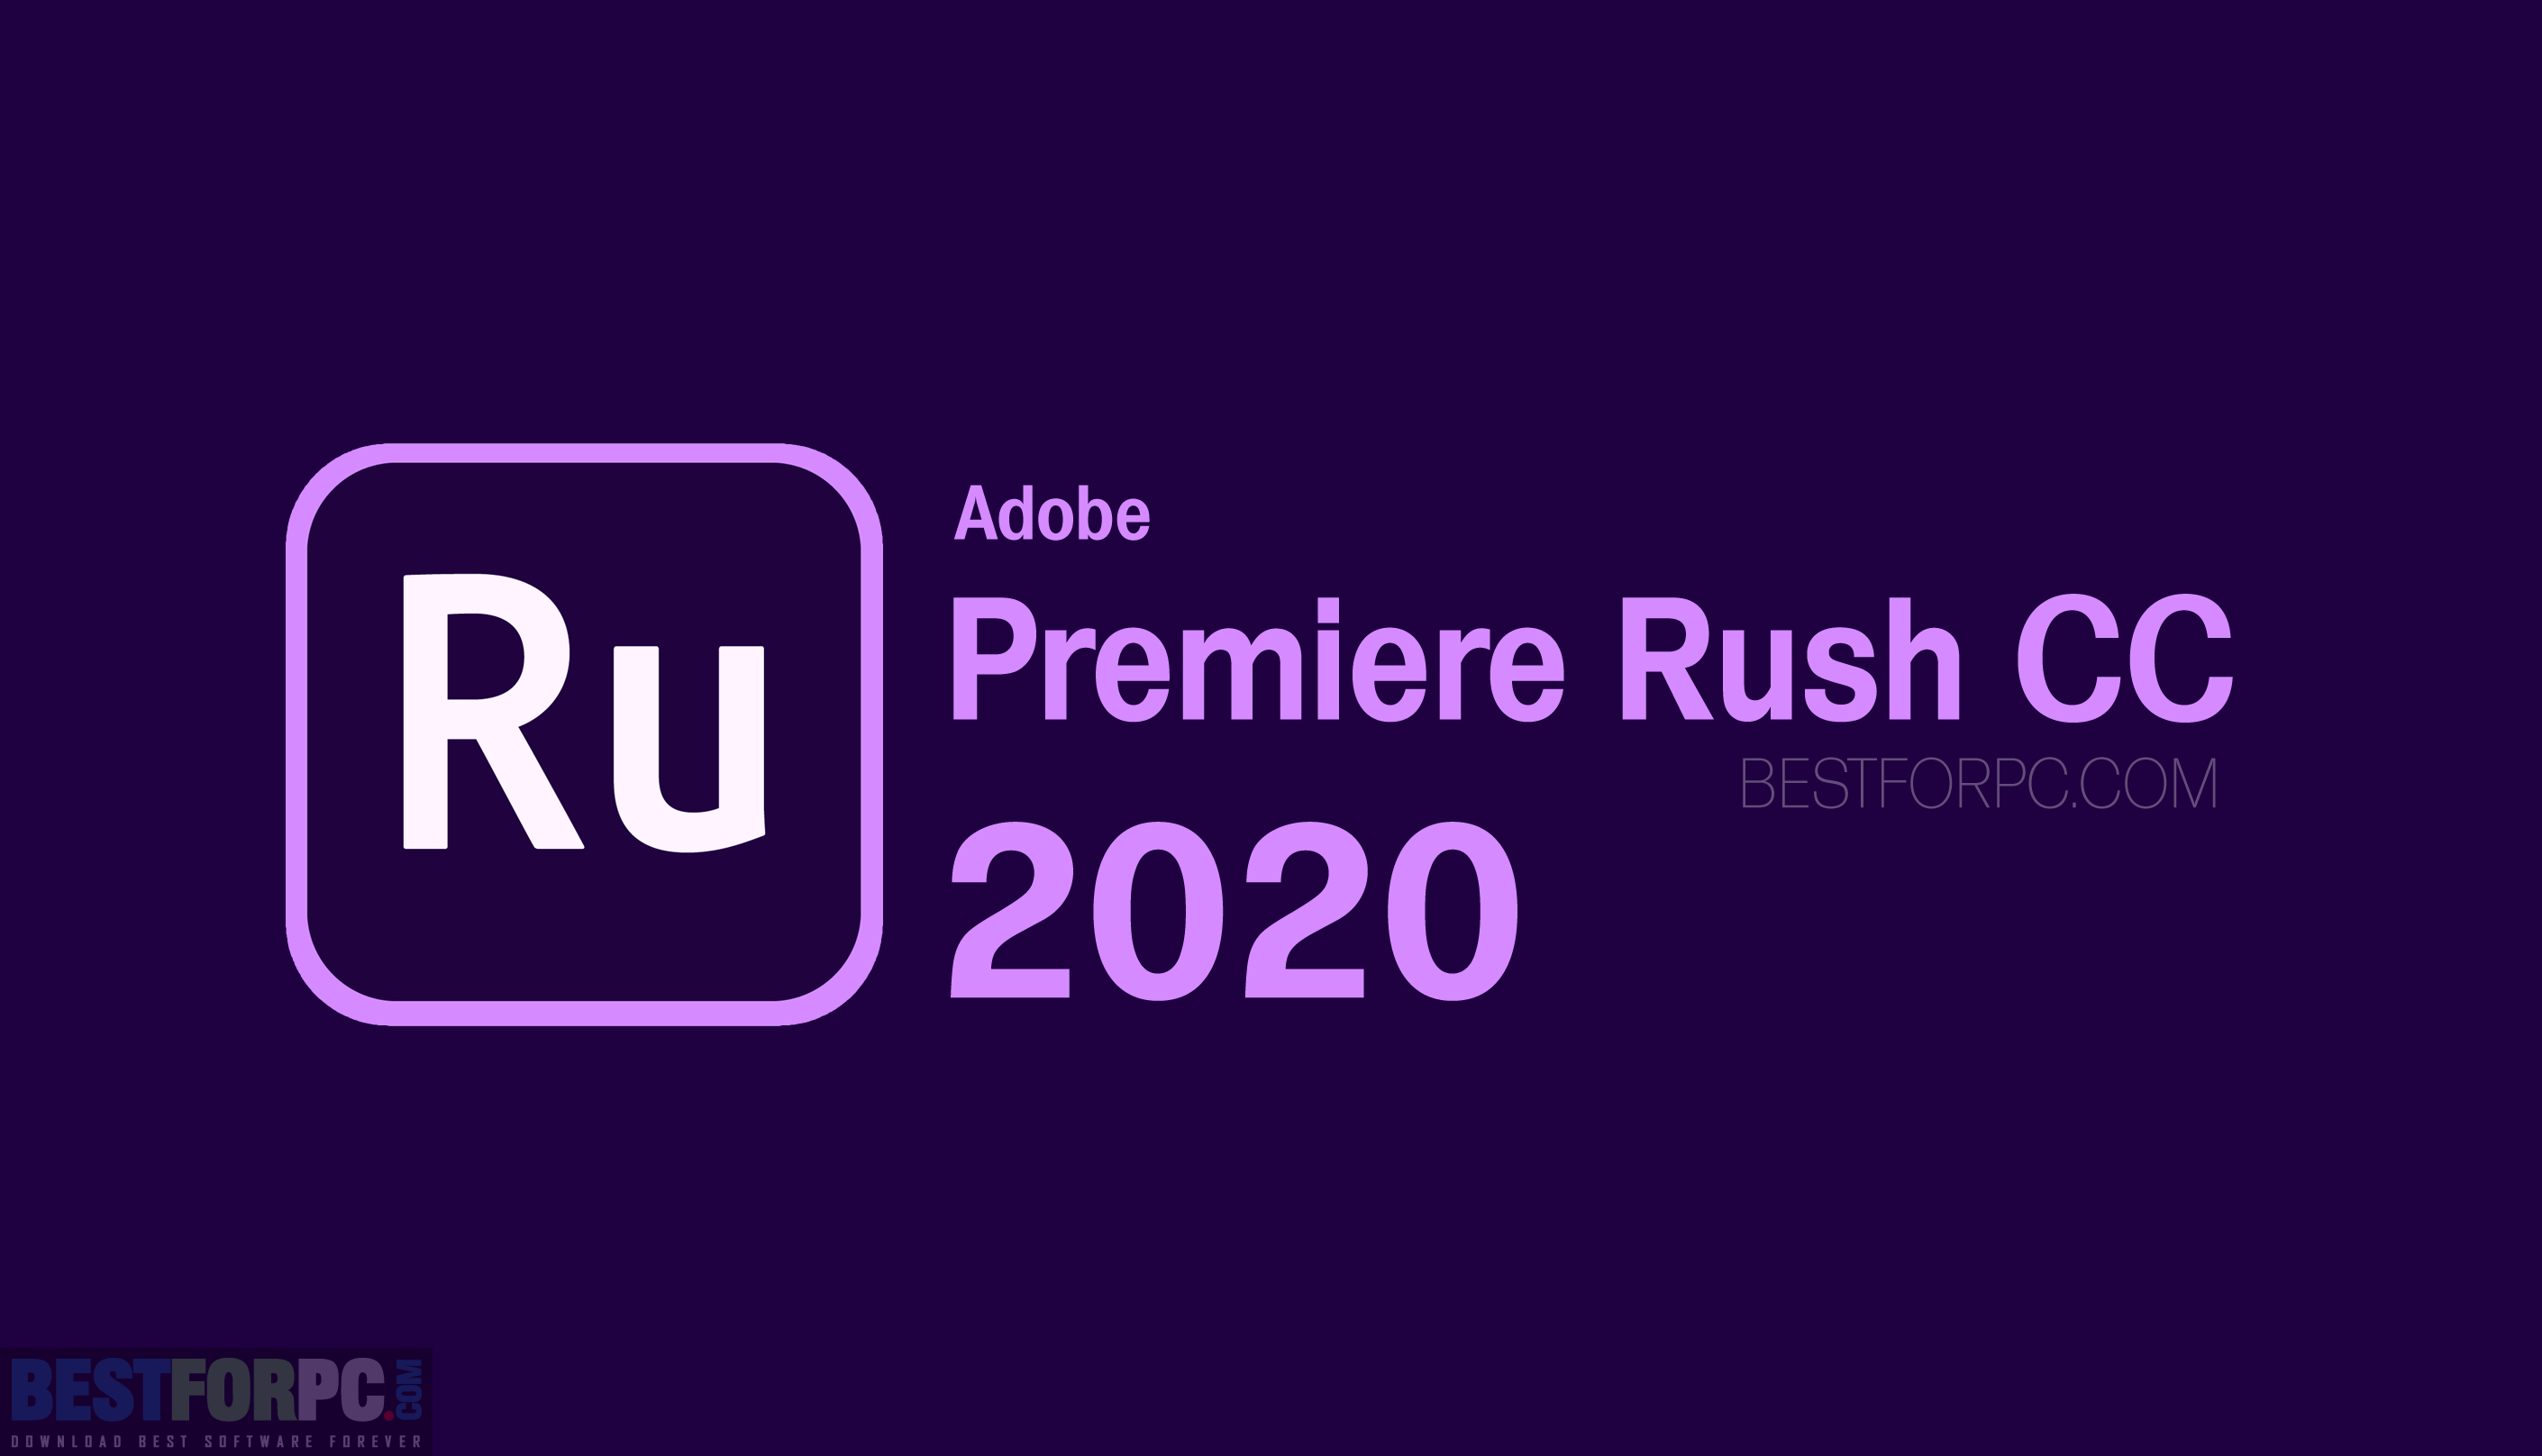 Adobe premiere pro cc 2020 full